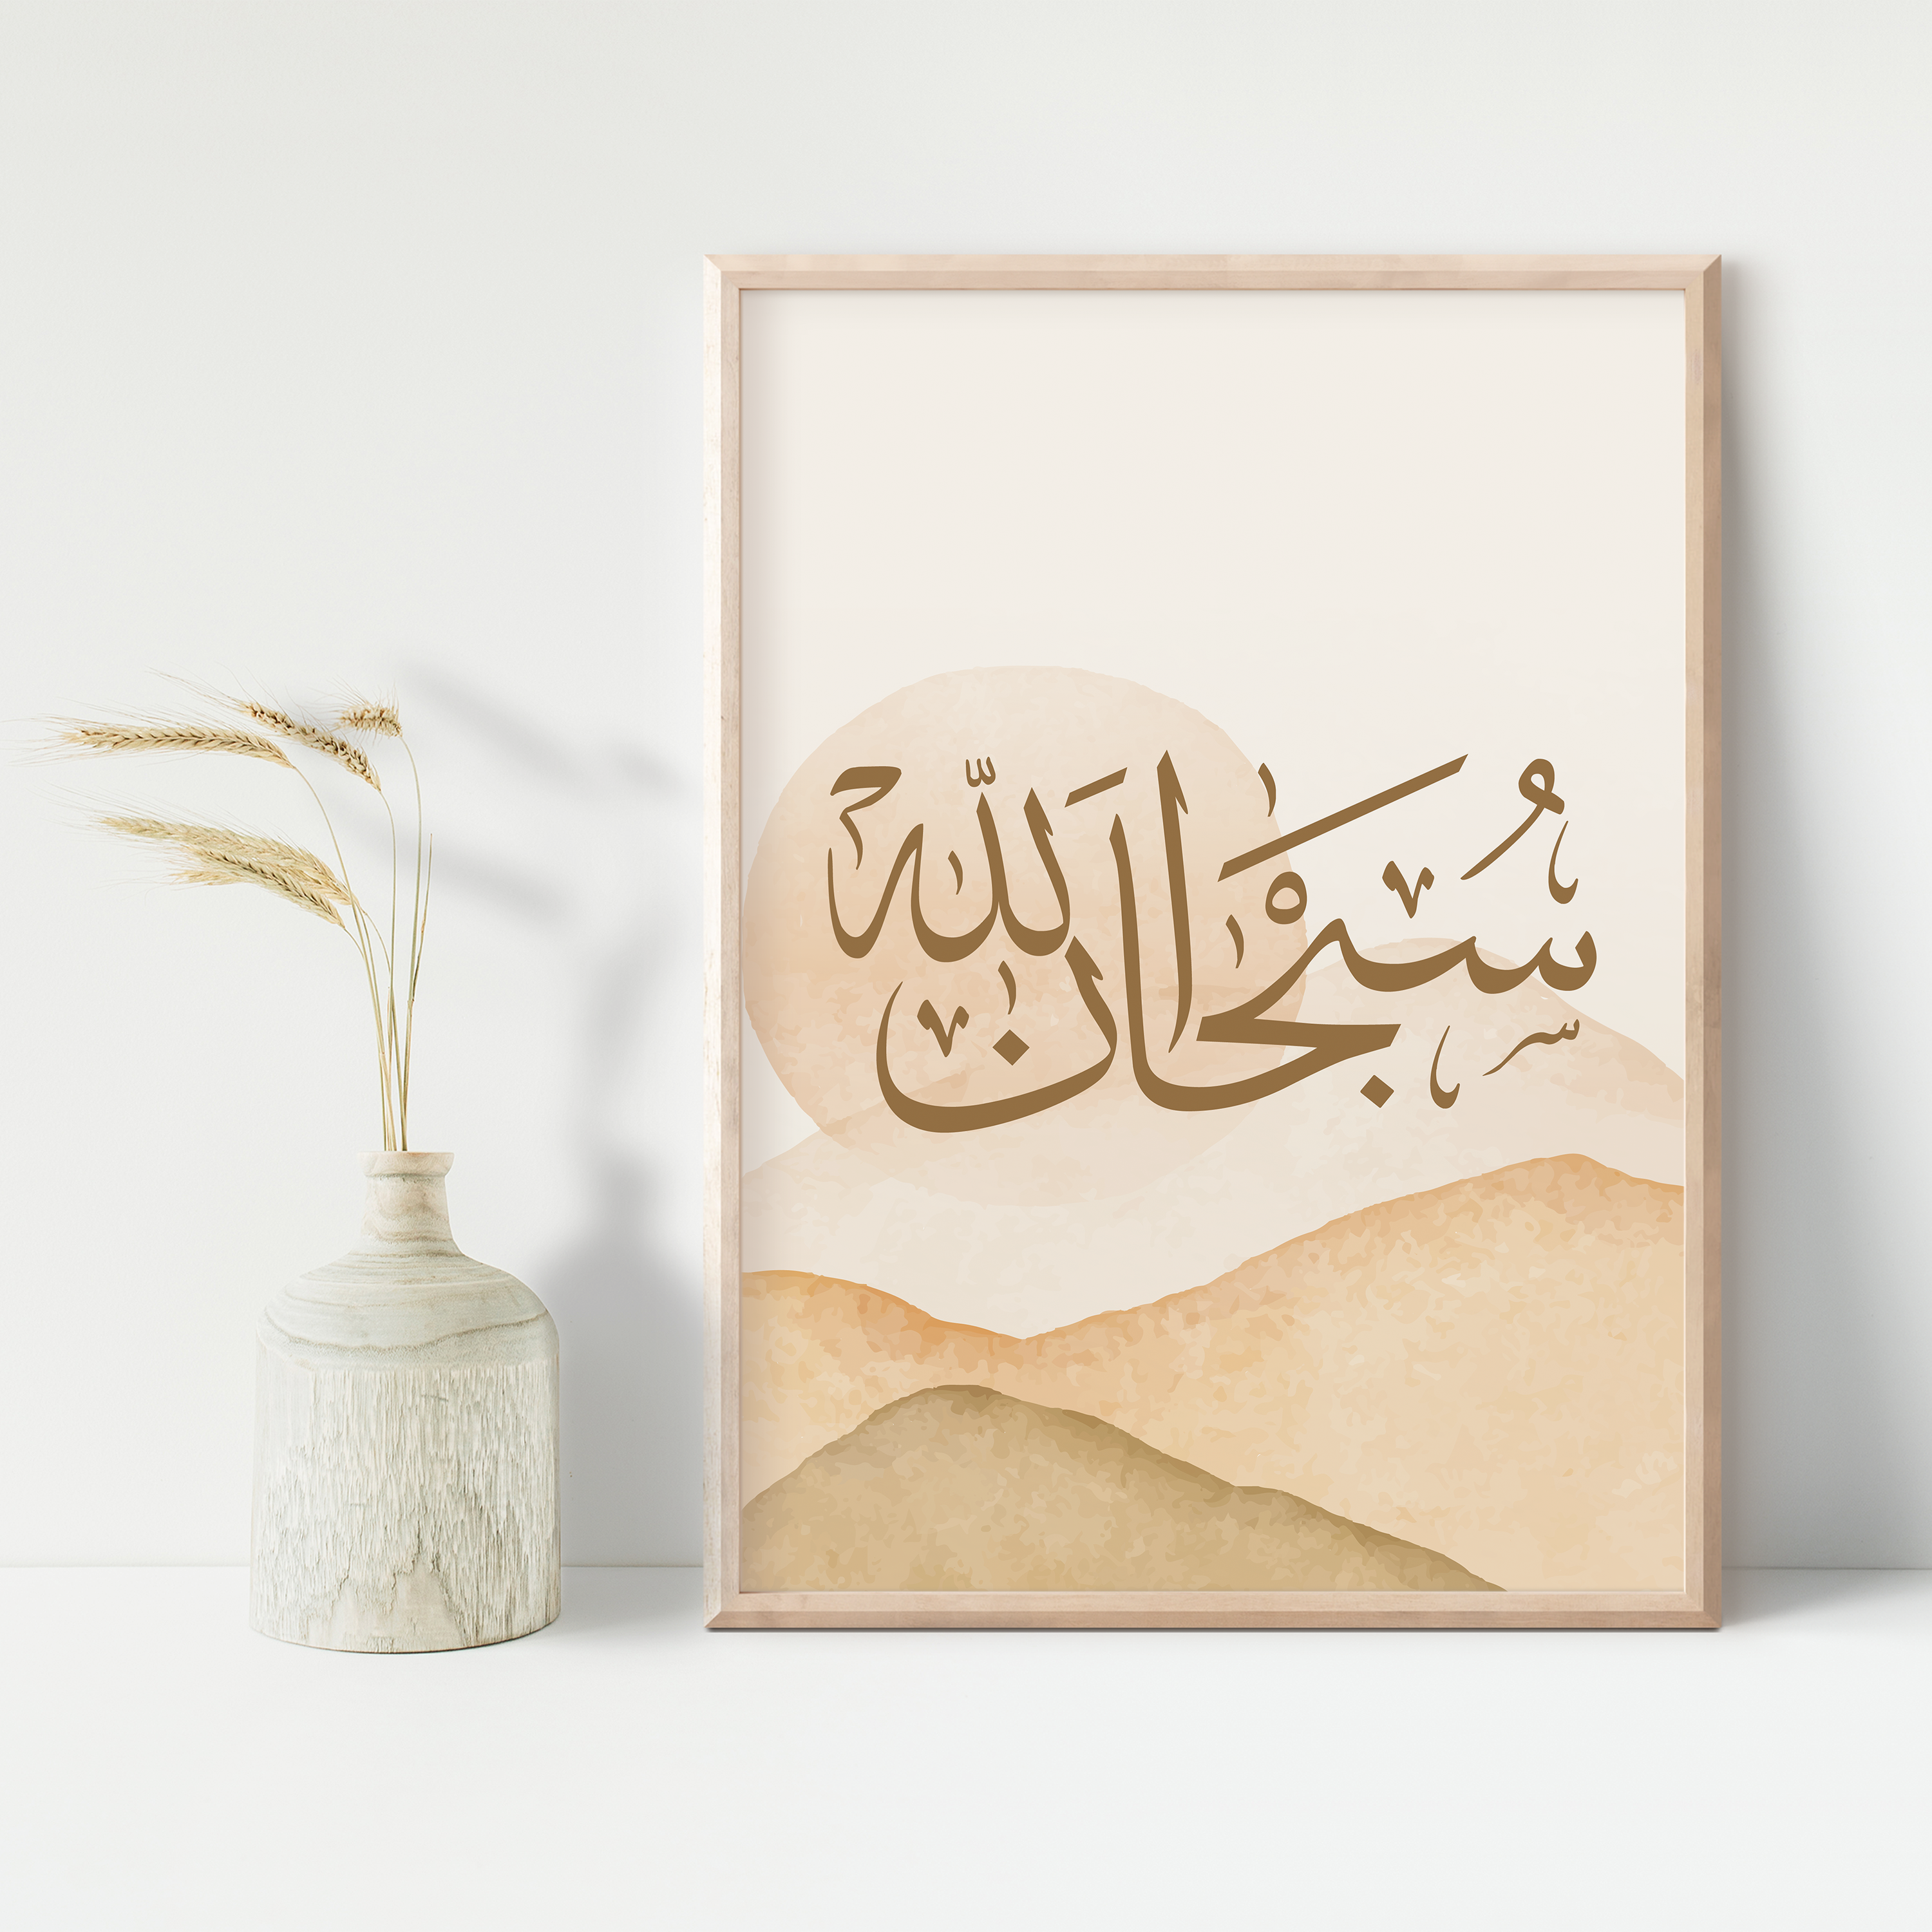 Arabic Wall Art | SubhanAllah, Alhamdulillah, Allahu Akbar | Getdawah